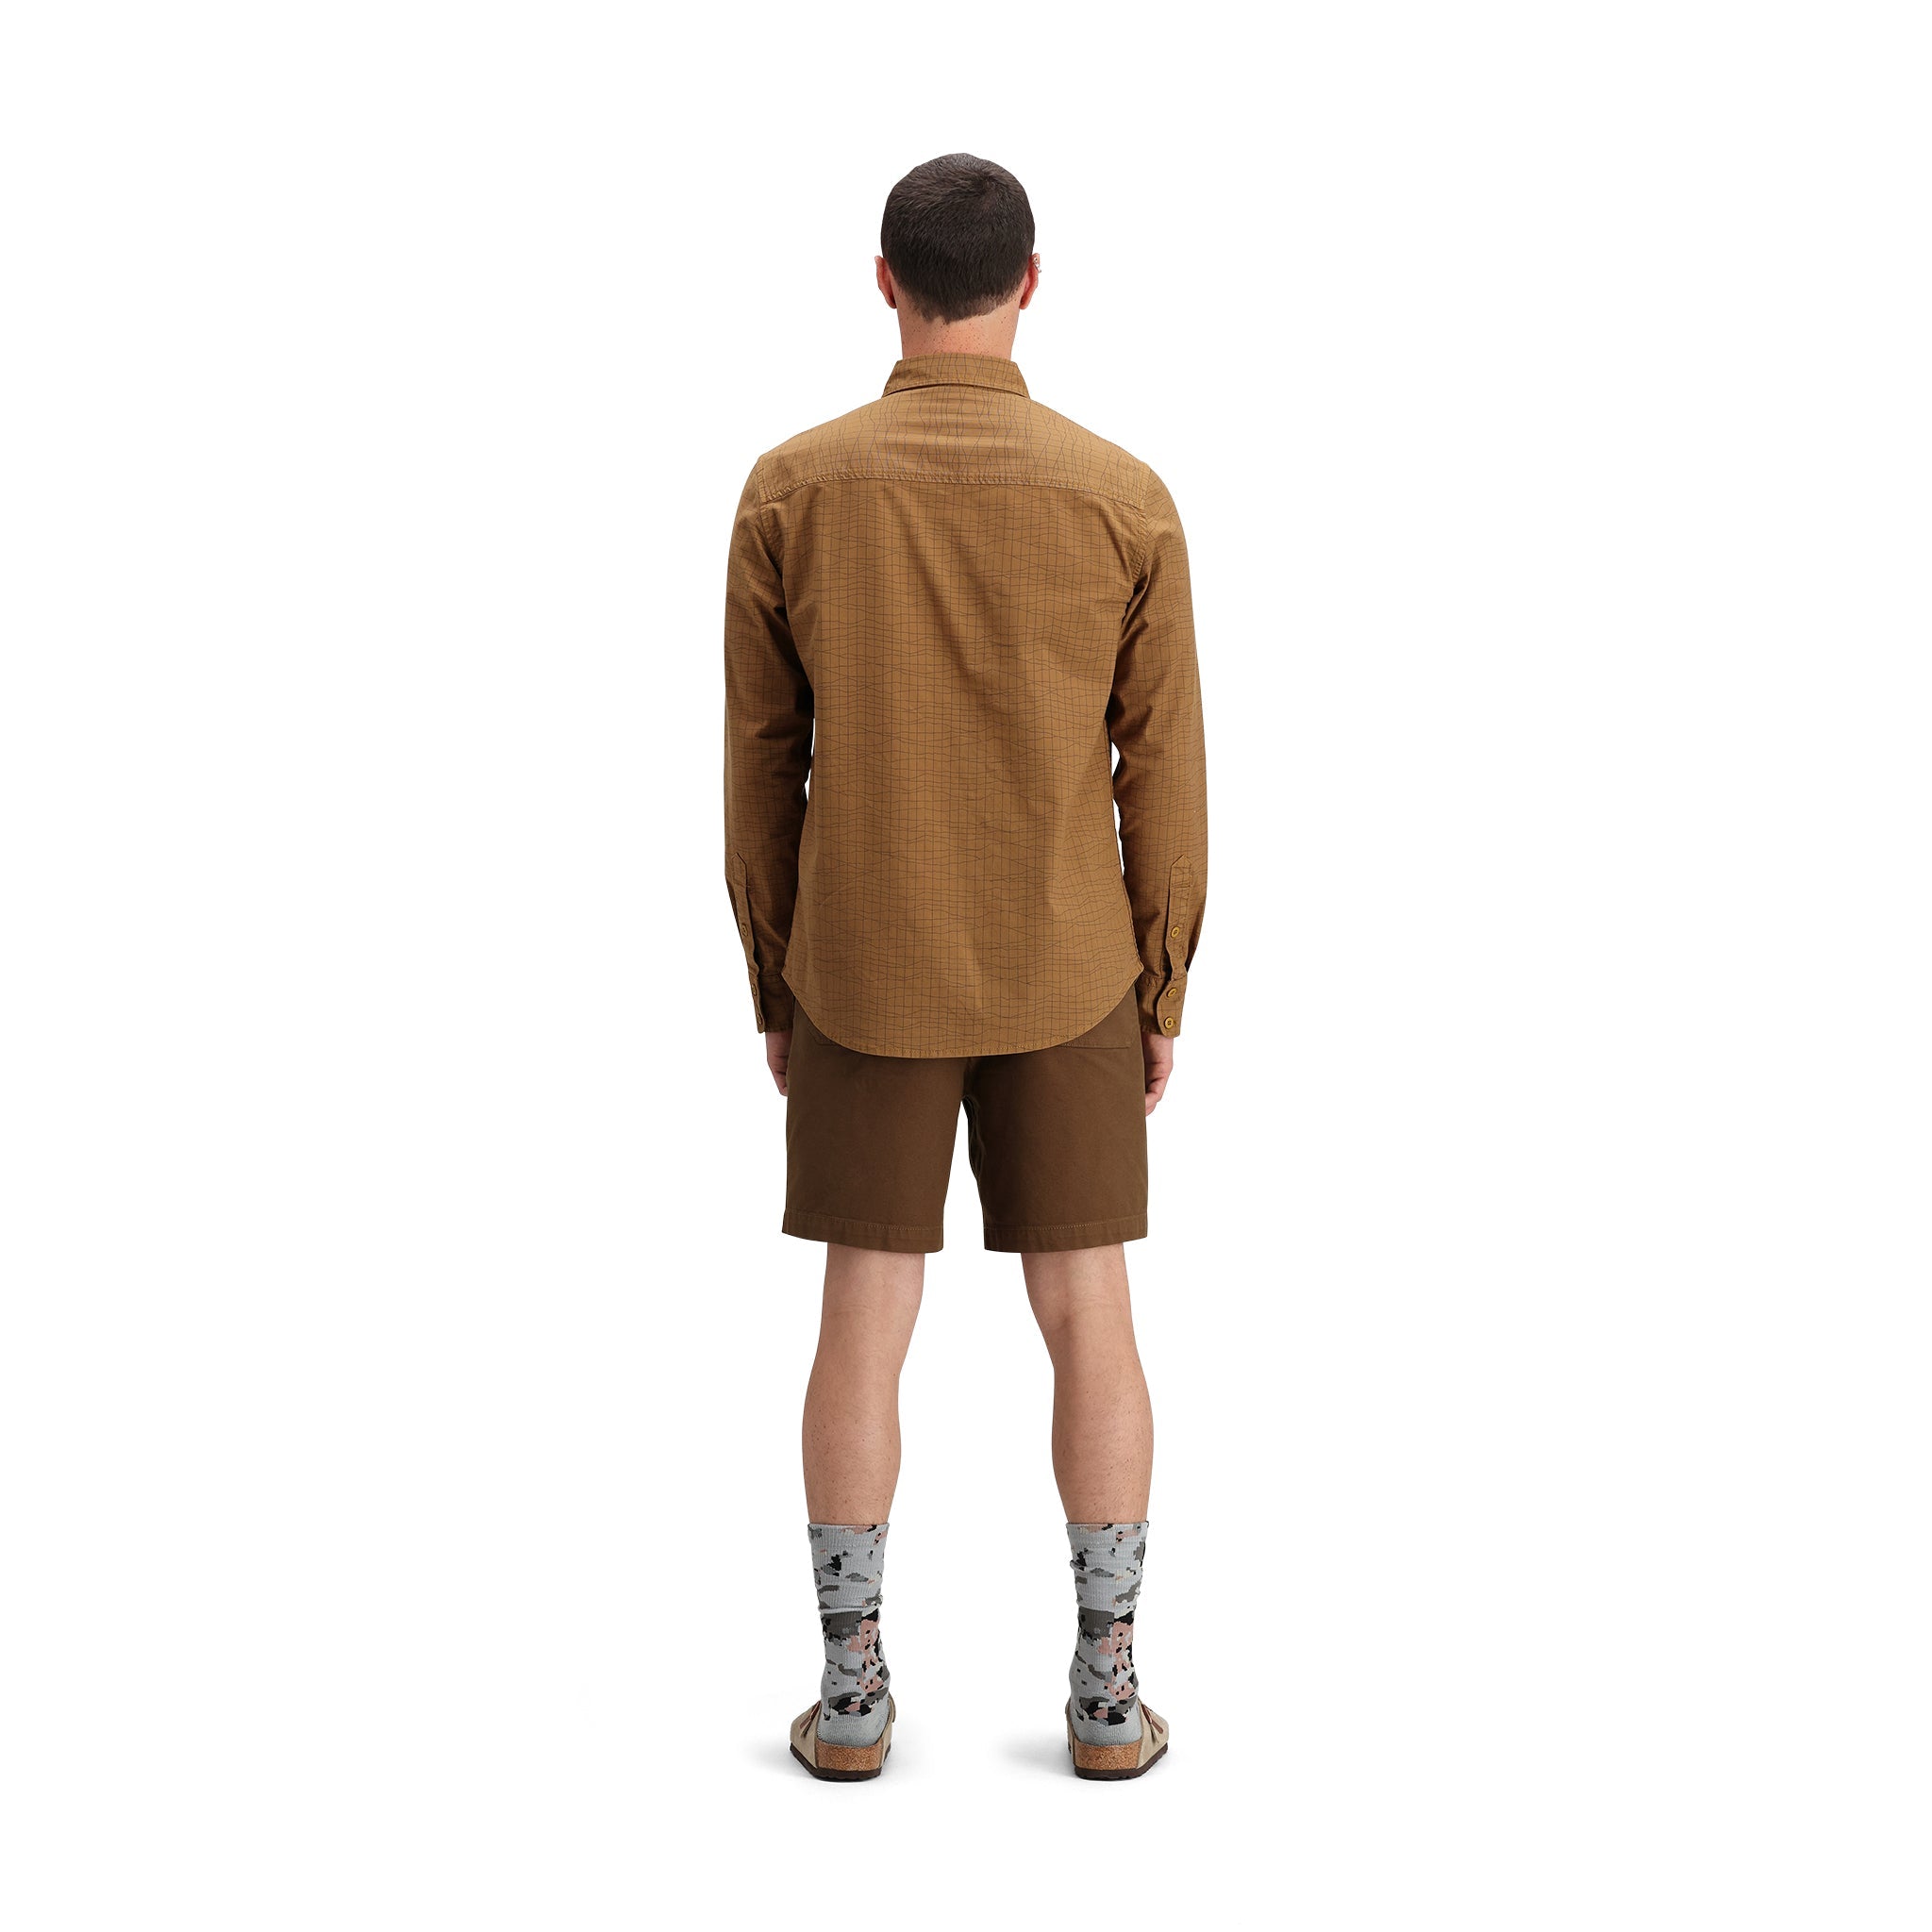 General back model shot of Topo Designs Dirt Desert Shirt - Men's  in "Dark Khaki Terrain"